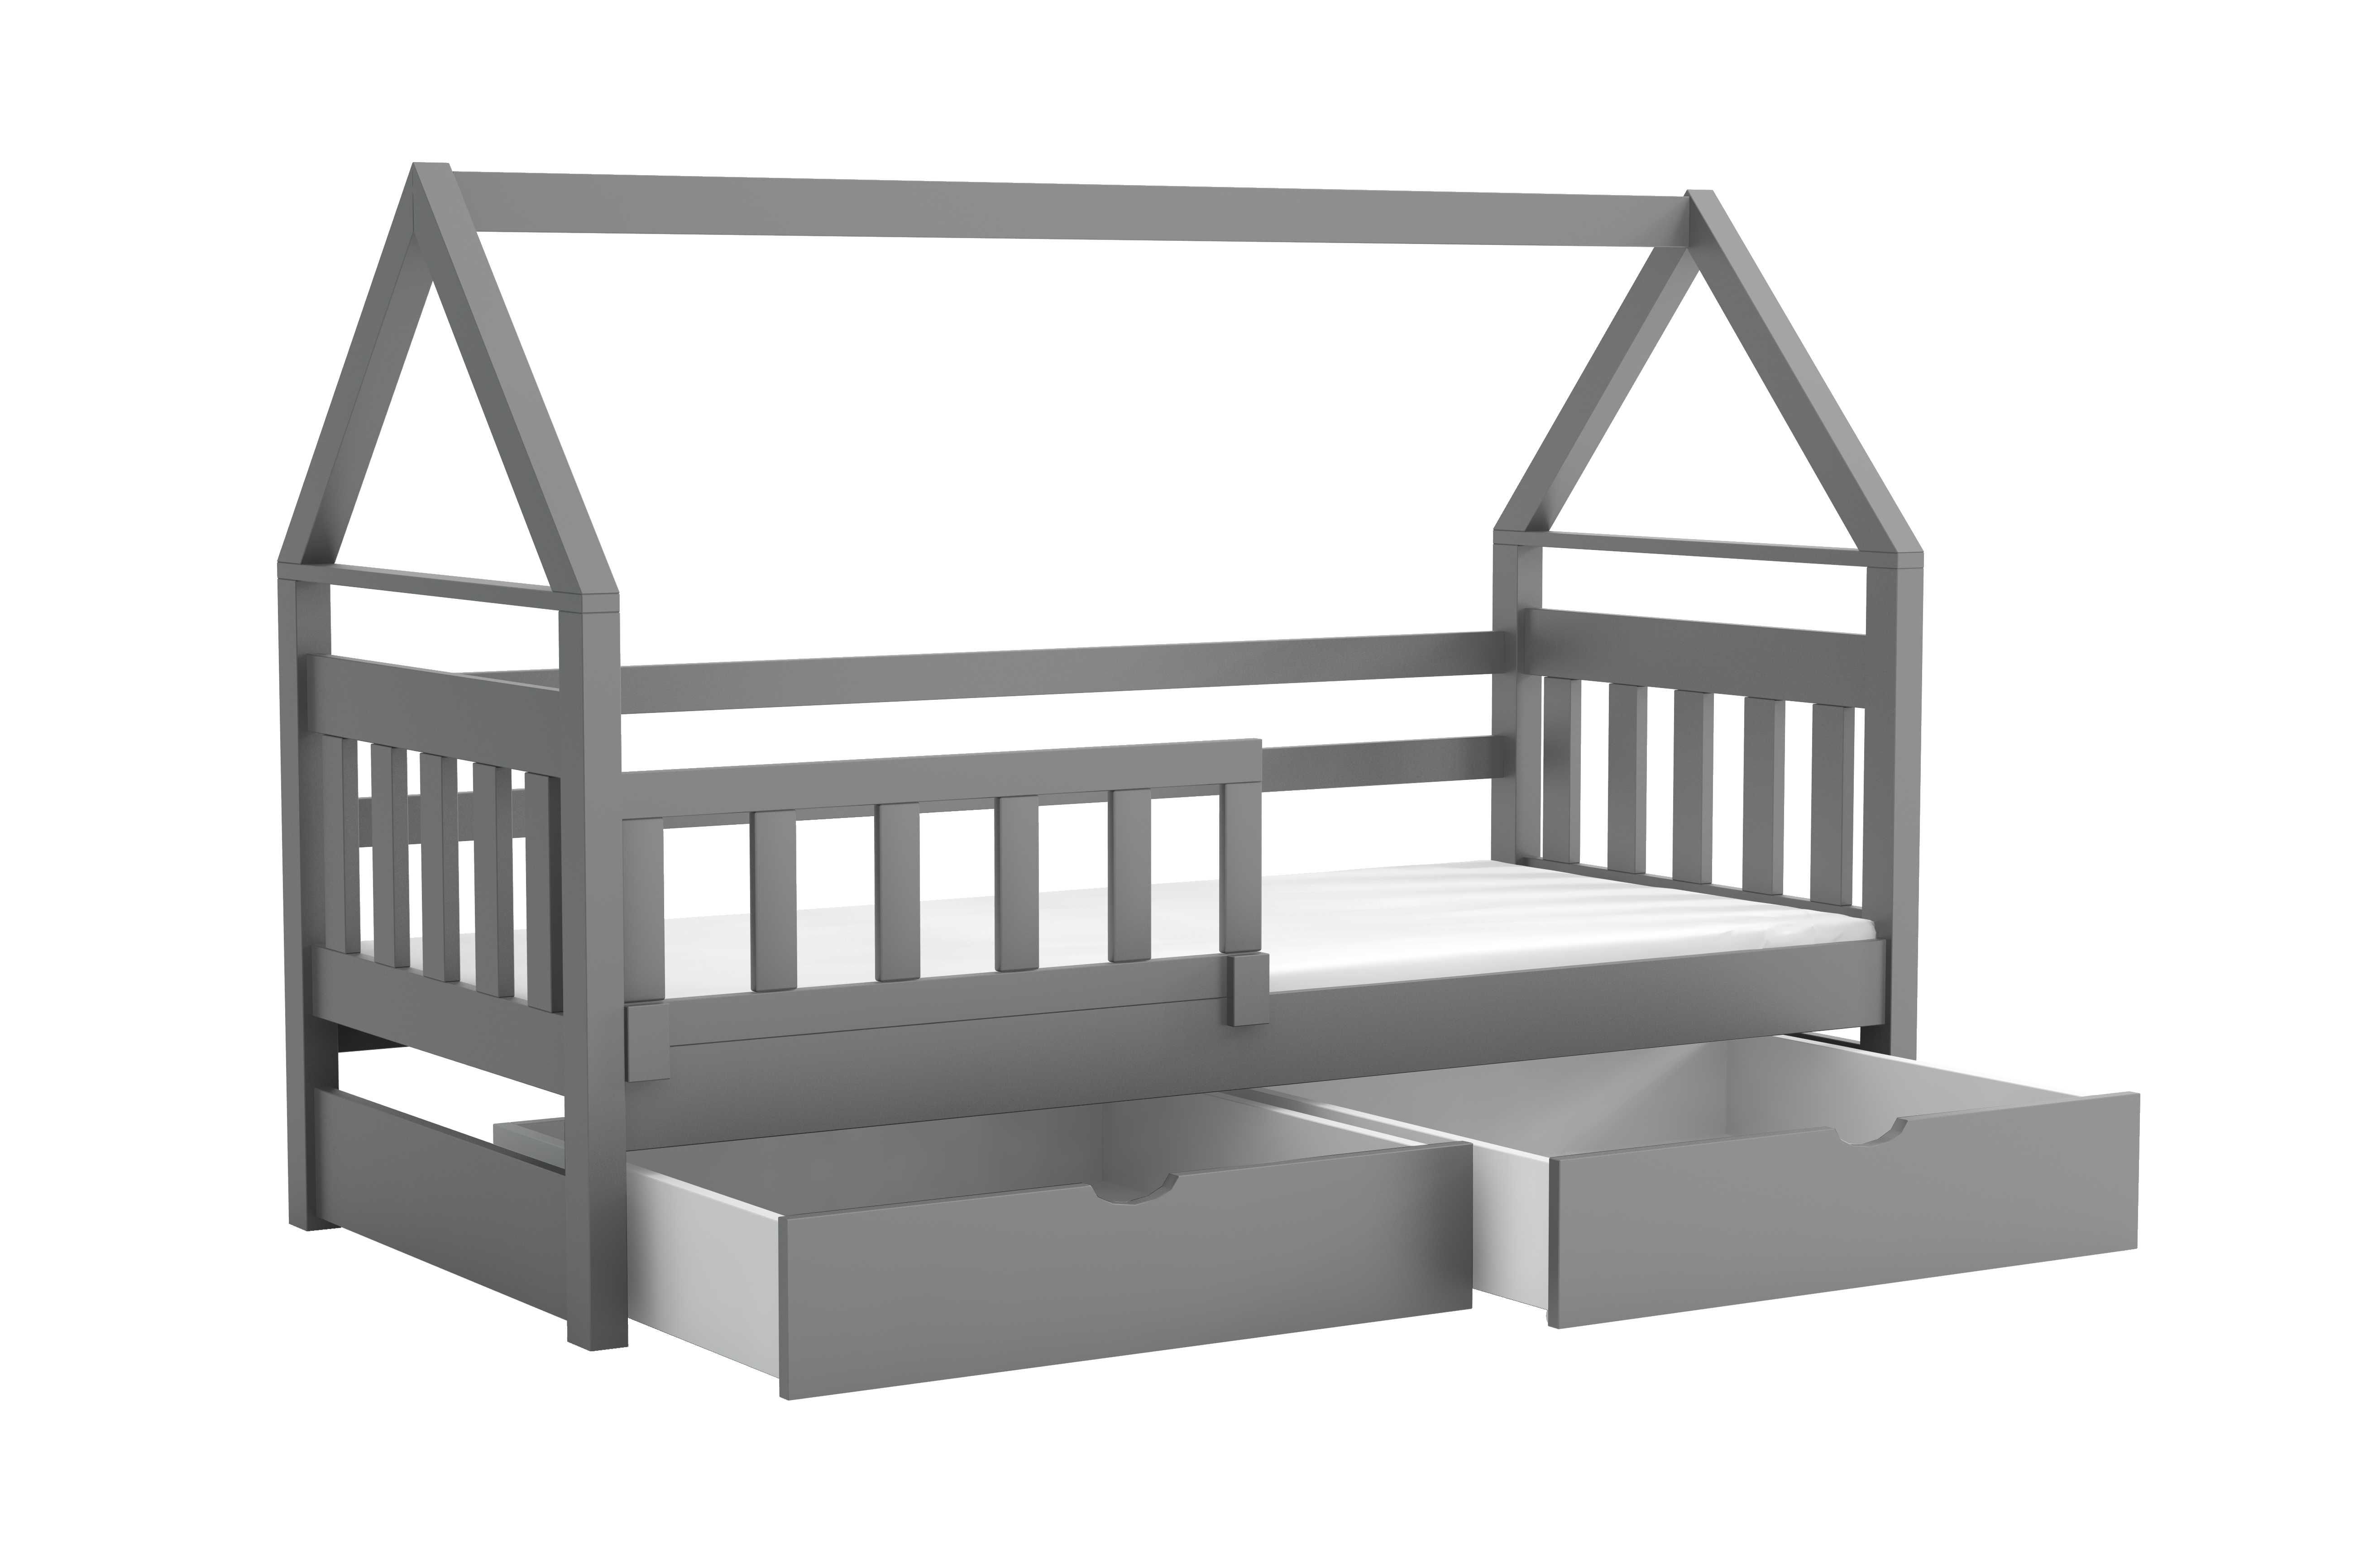 Łóżko dla dzieci DOMEK1, materac 160x75 lub 180x75 - dostawa cały kraj